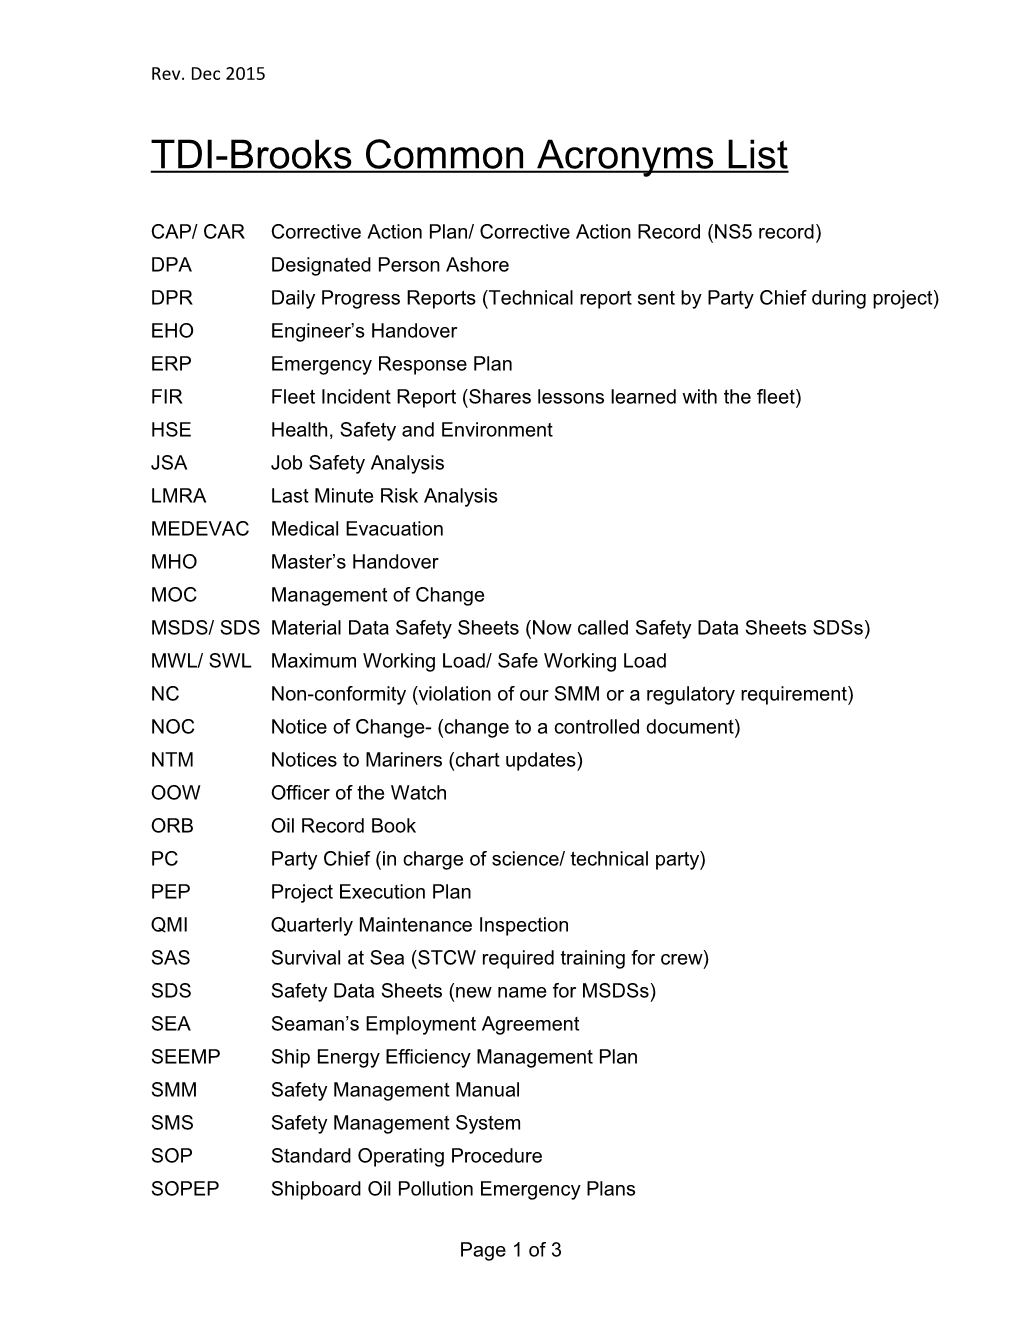 TDI-Brooks Common Acronyms List